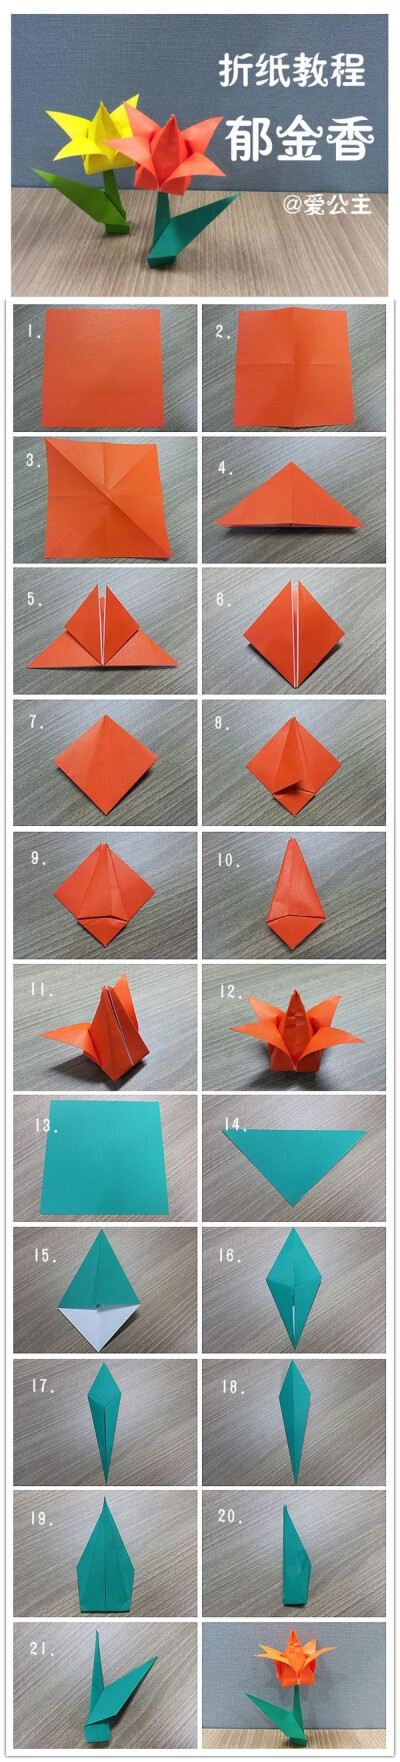 手工达人的折纸教程:郁金香